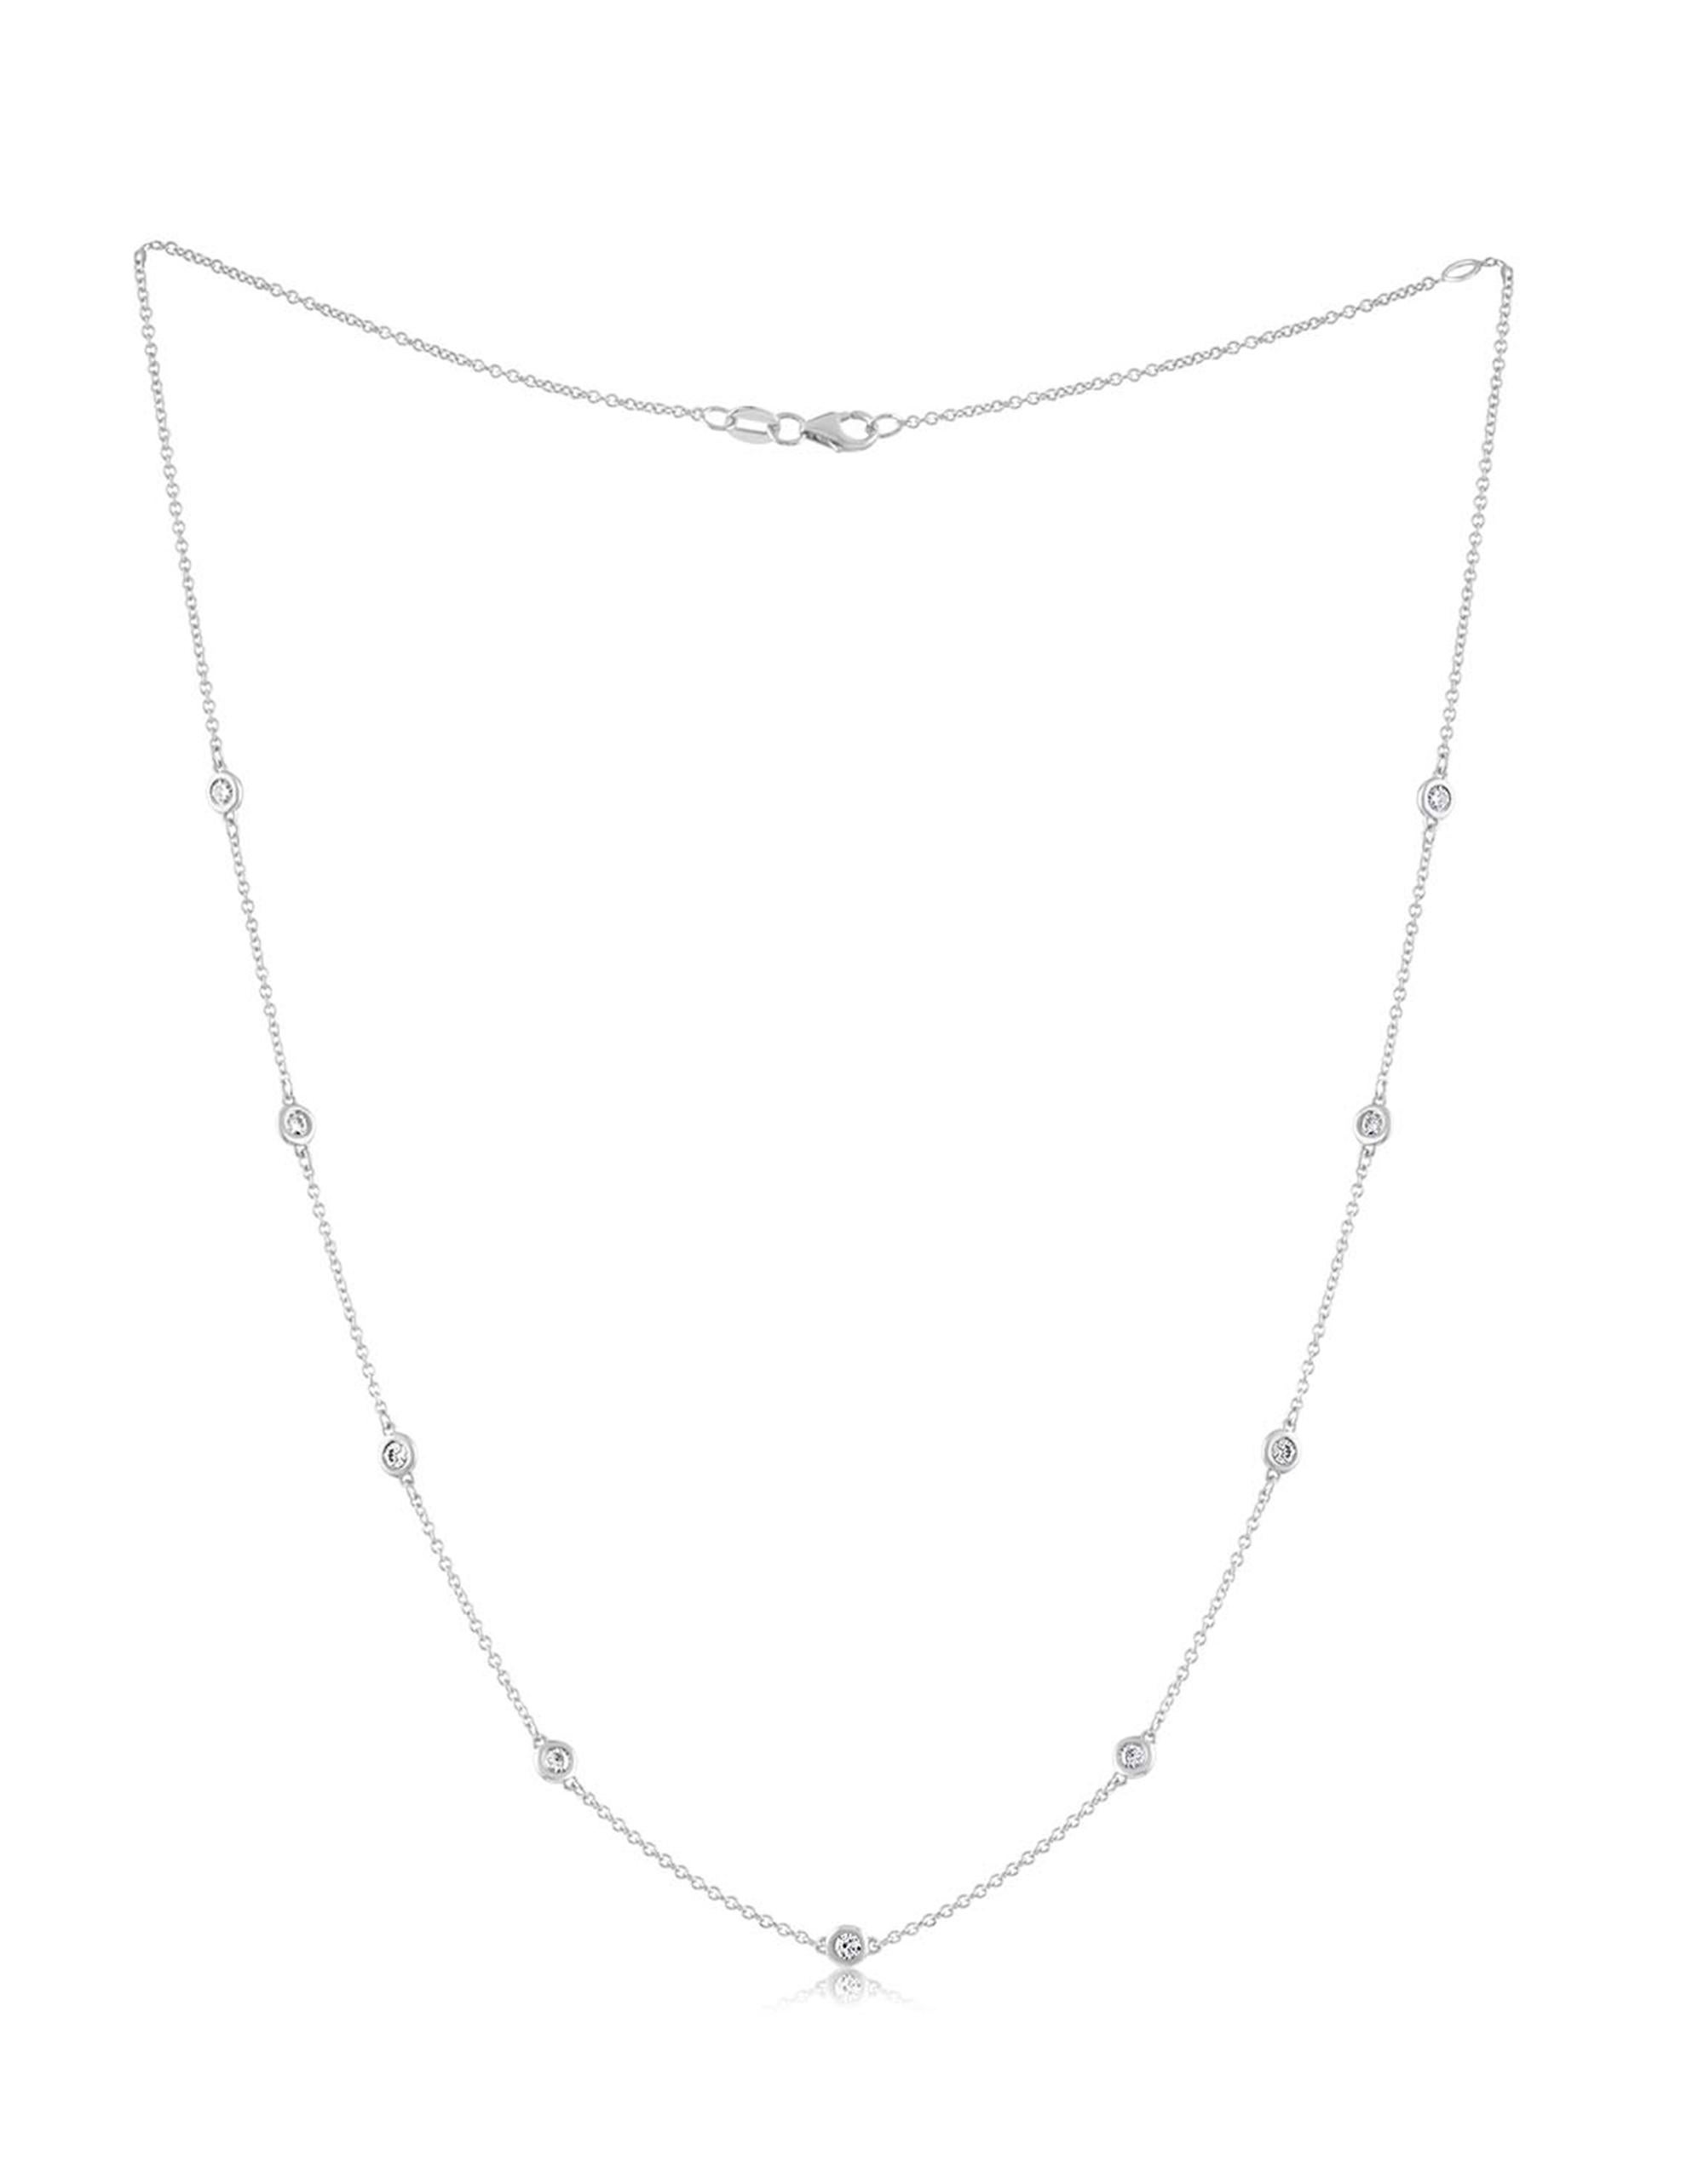 14-karätiges Weißgold, 18-Zoll-Halskette mit runden Diamanten von 1,00 Karat (tw)
Diana M. ist seit über 35 Jahren ein führender Anbieter von hochwertigem Schmuck.
Diana M ist eine zentrale Anlaufstelle für alle Ihre Schmuckeinkäufe und führt eine